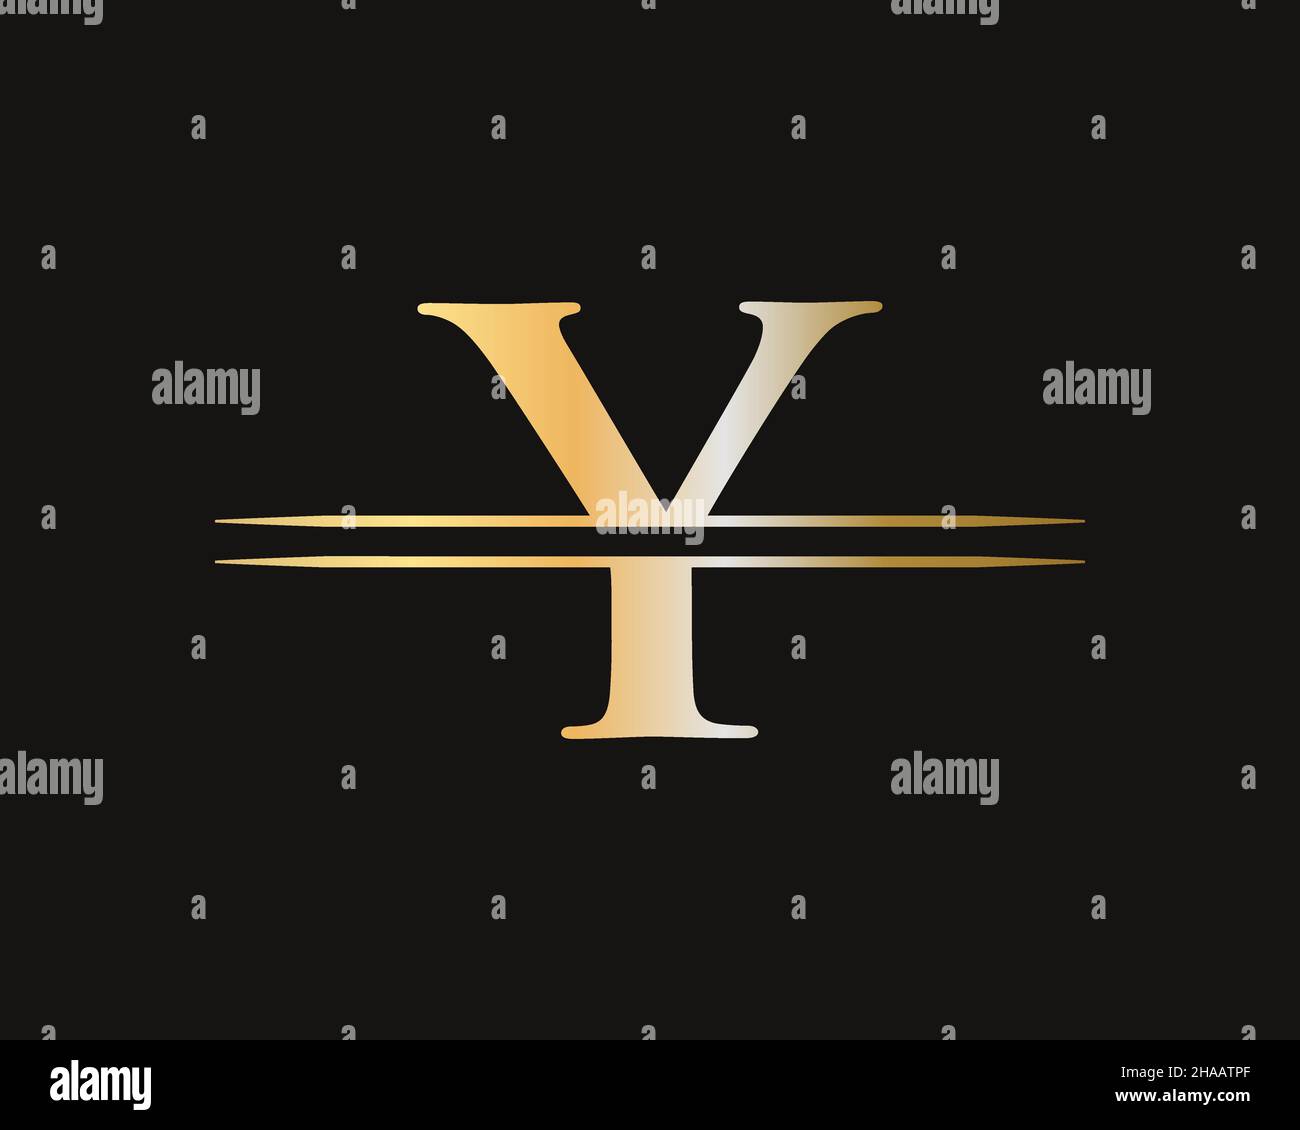 Y Logo design vector. Swoosh letter Y logo design Stock Vector